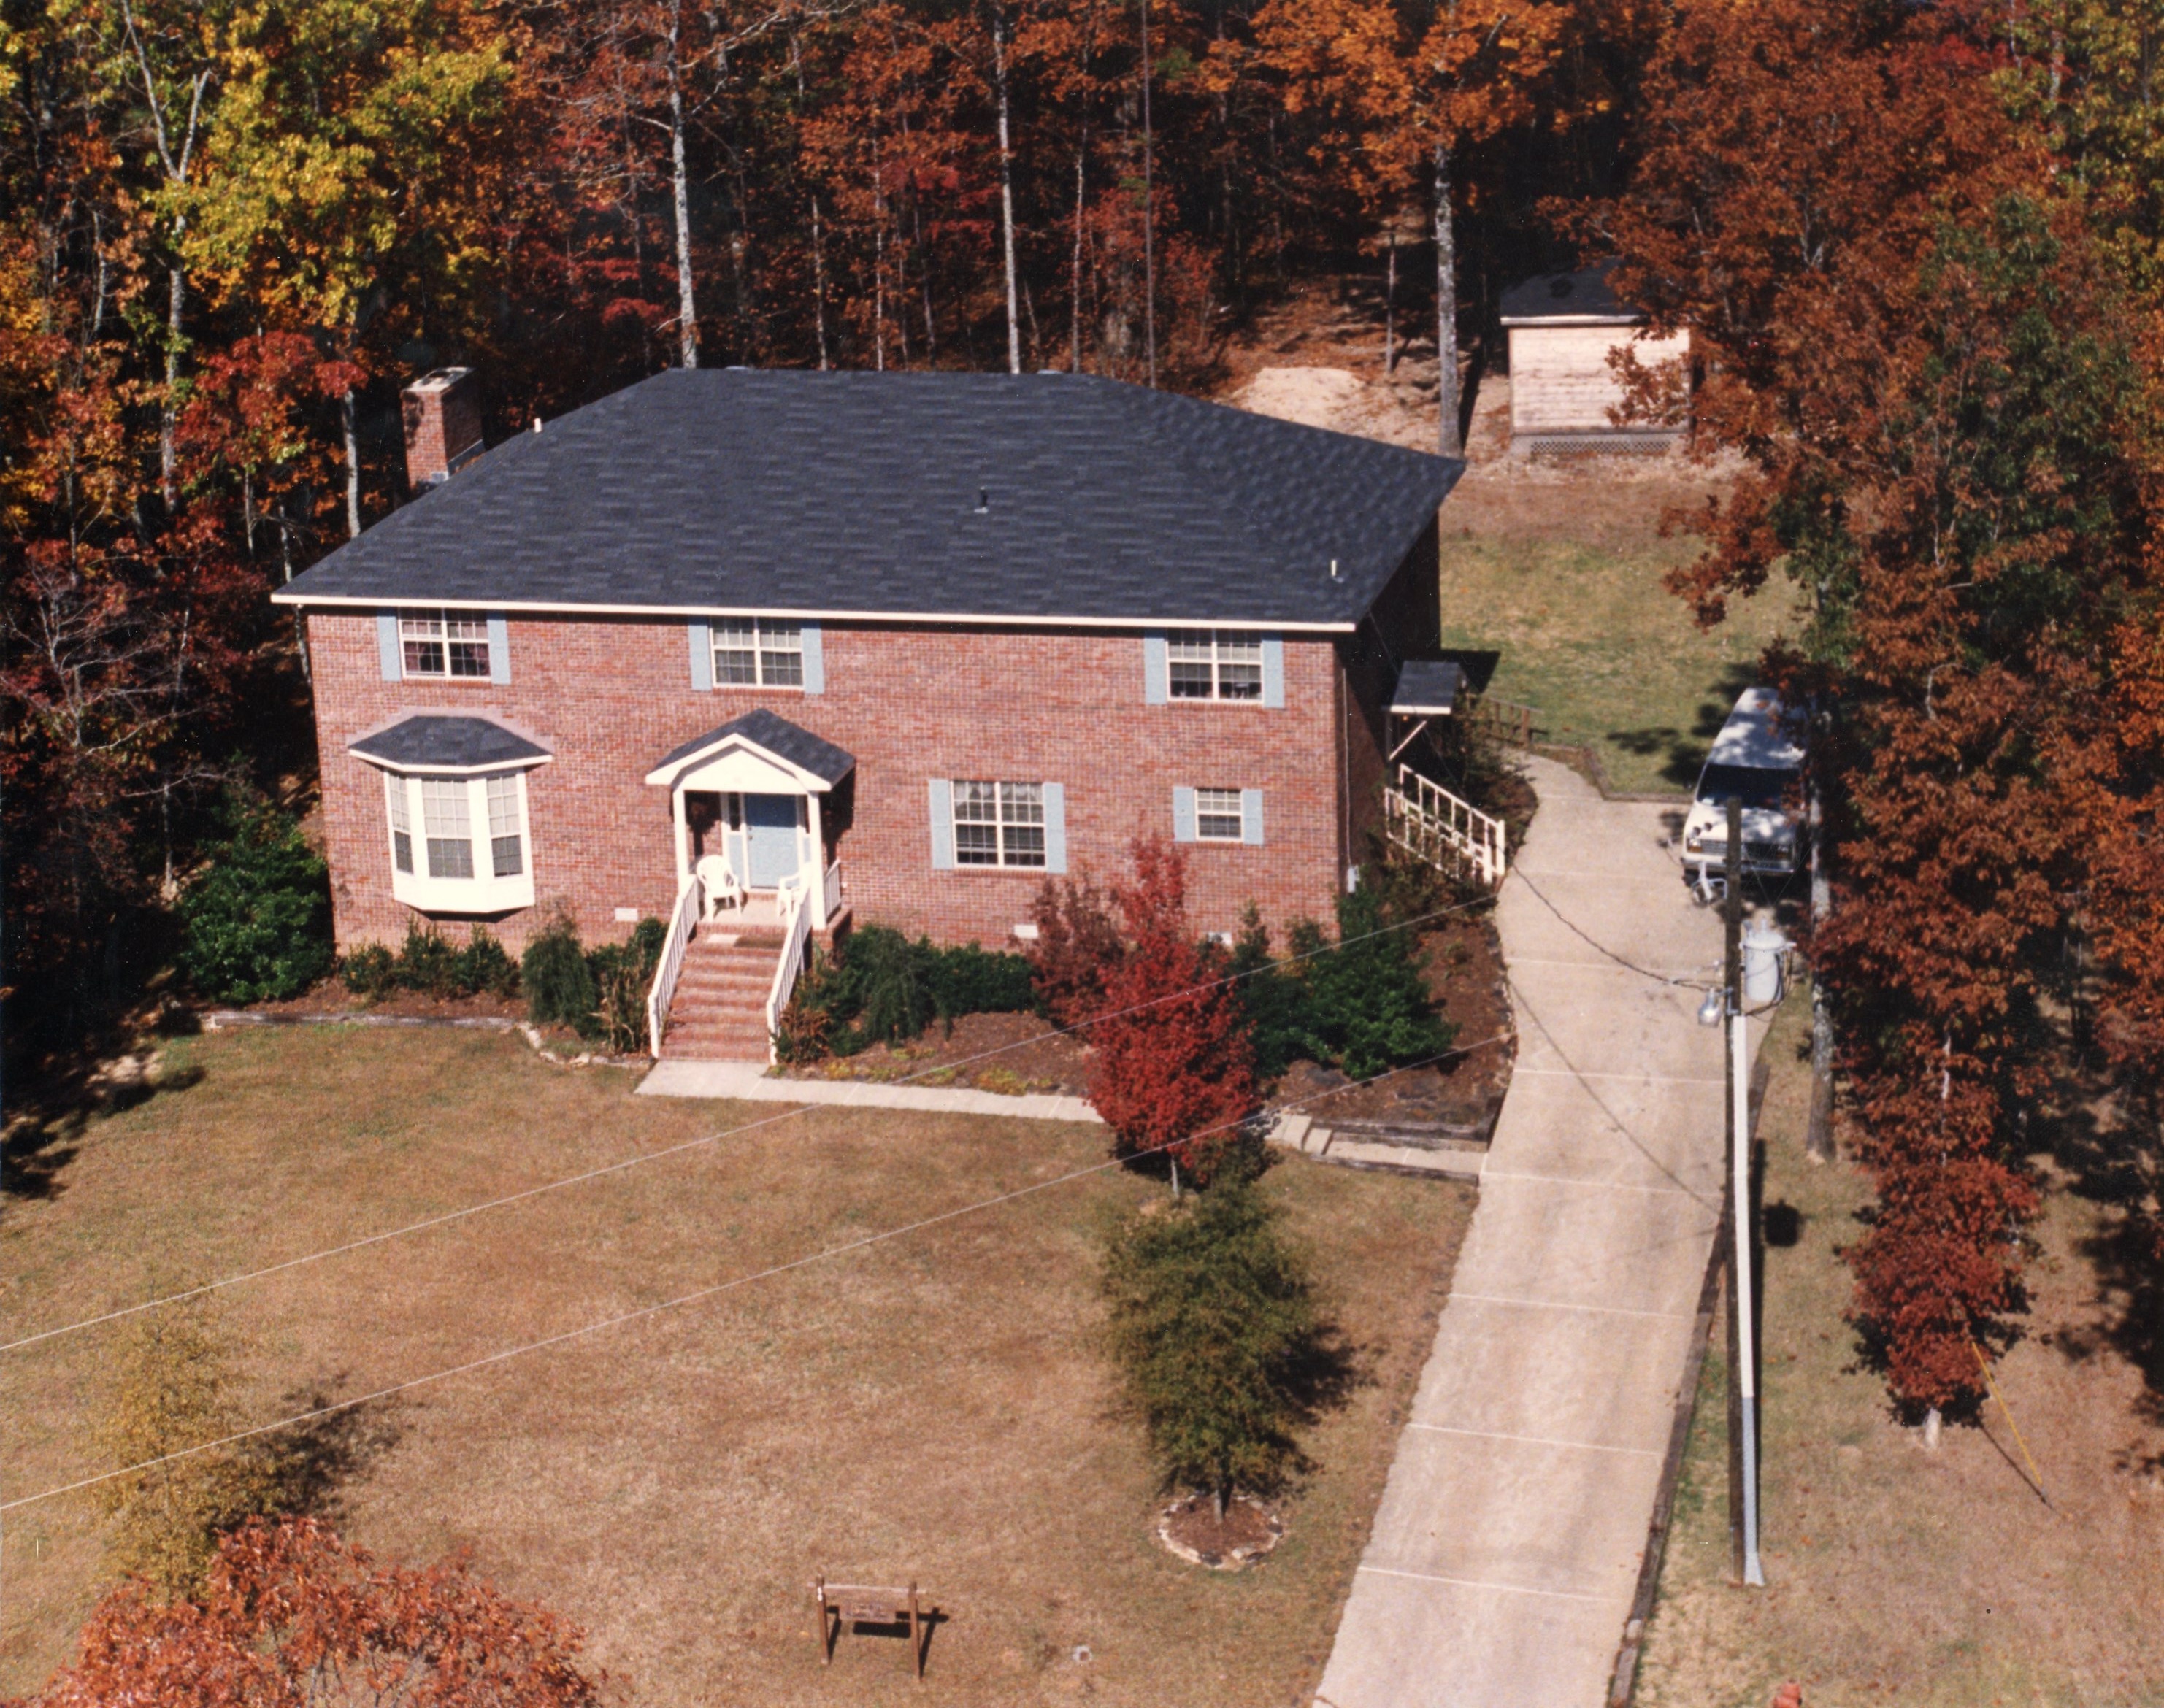 McDaniel Home, Aerial View